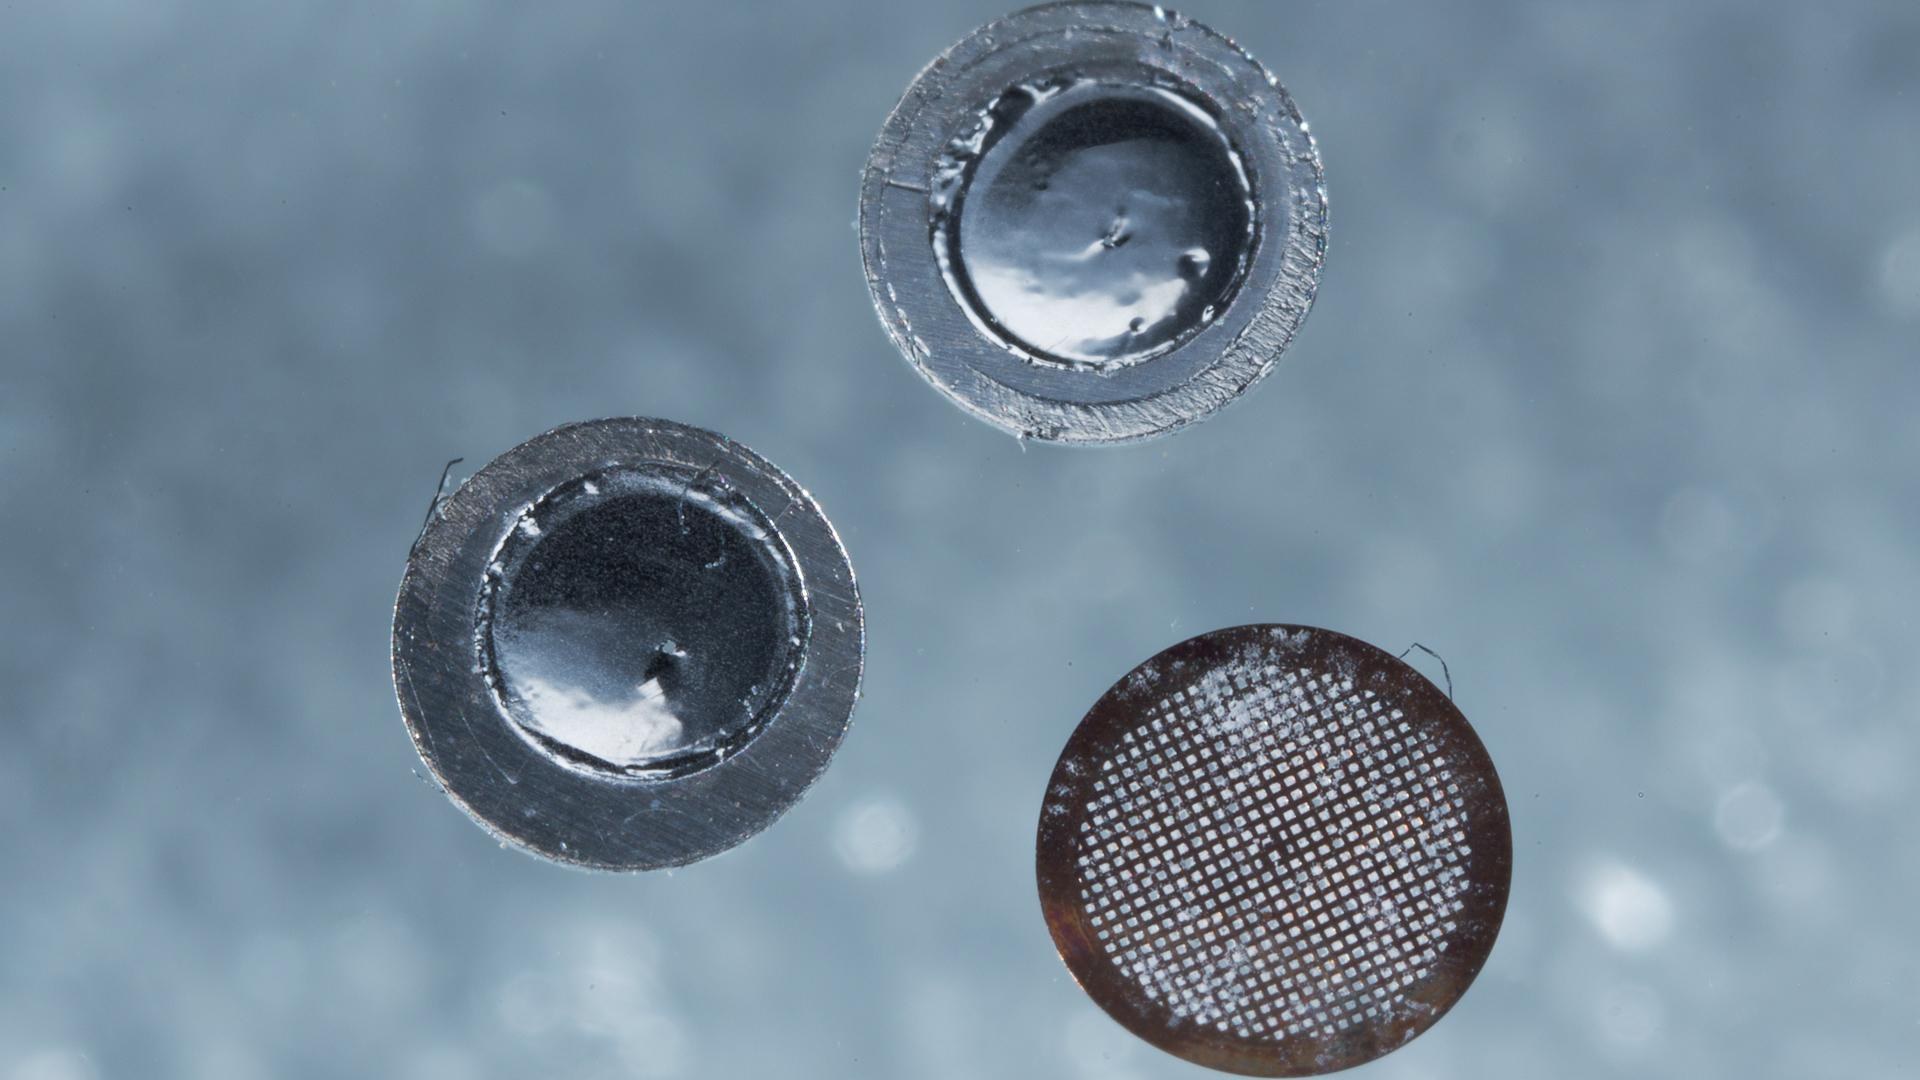 Proben für die Untersuchung im Analytischen Transmissionselektronenmikroskop: Zwei elektrolytisch gedünnte Aluminium-Vollpräparate und eine Pulverprobe auf Kohlenstoff-Lochfilm, welcher über ein Kupfer-Netz gespannt ist. Probendurchmesser jeweils 3 mm.